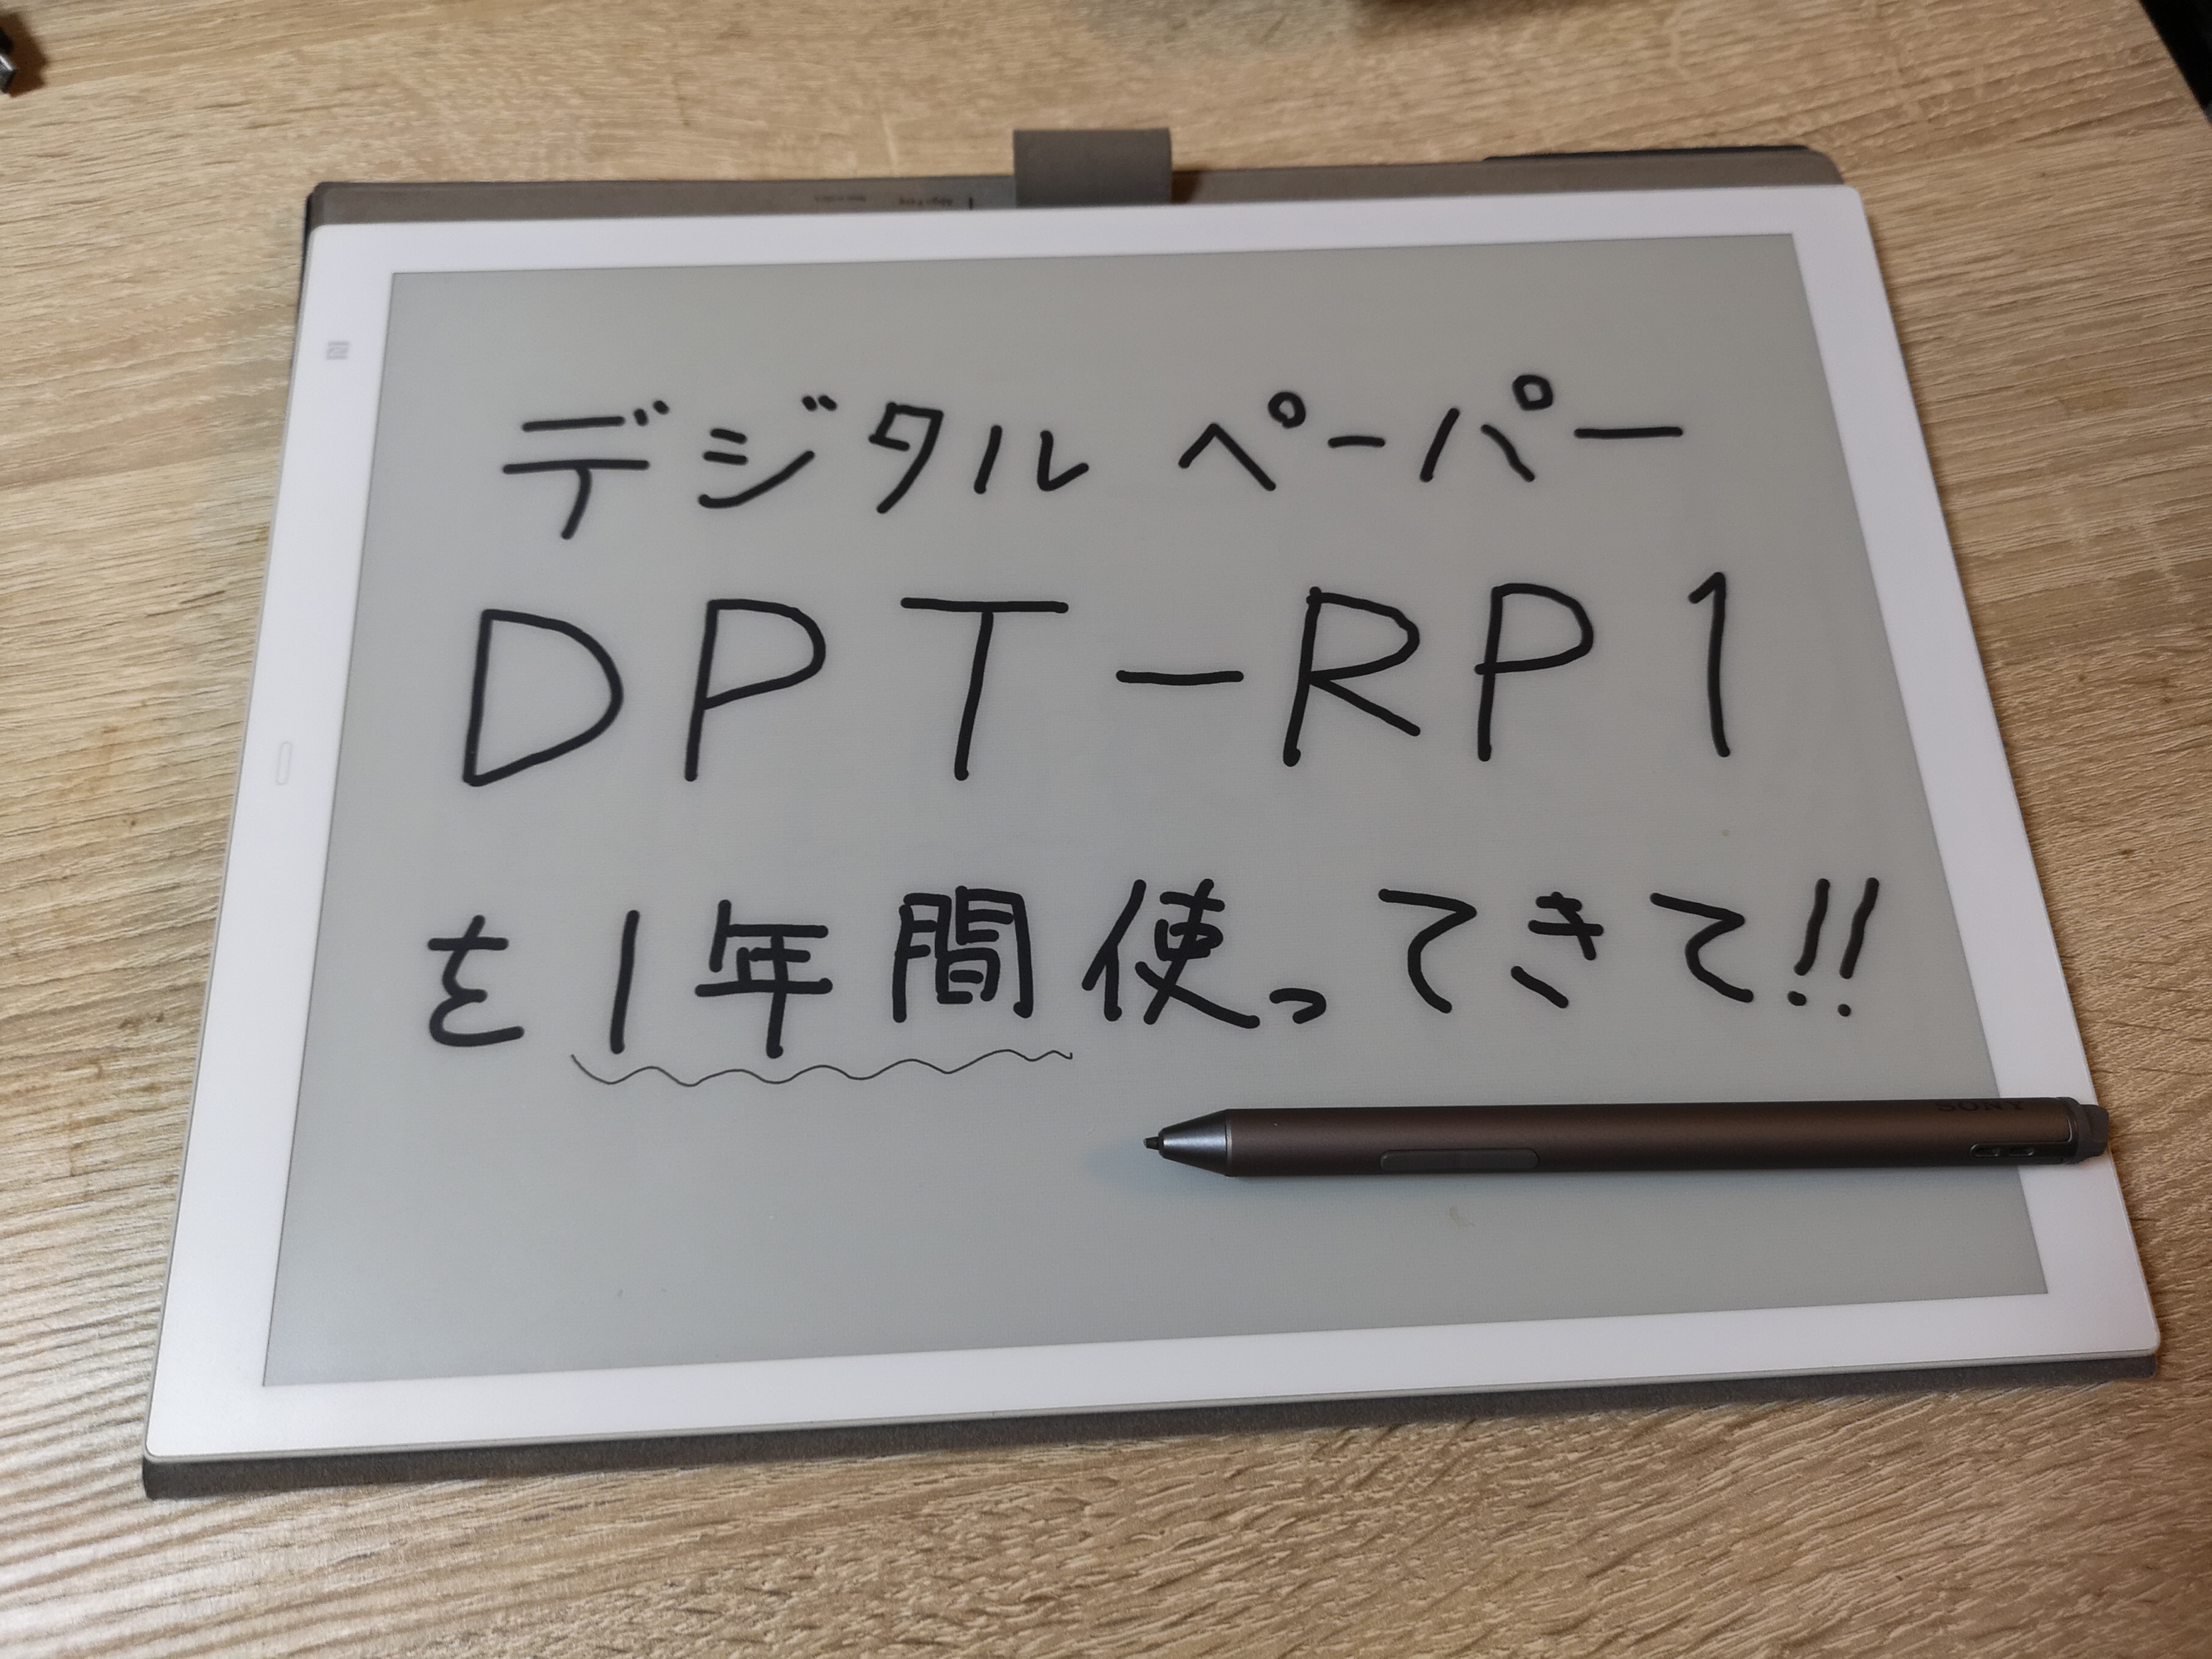 DPT-RP1 1年レビュー】1年使って感じる、デジタルペーパーの完成度と